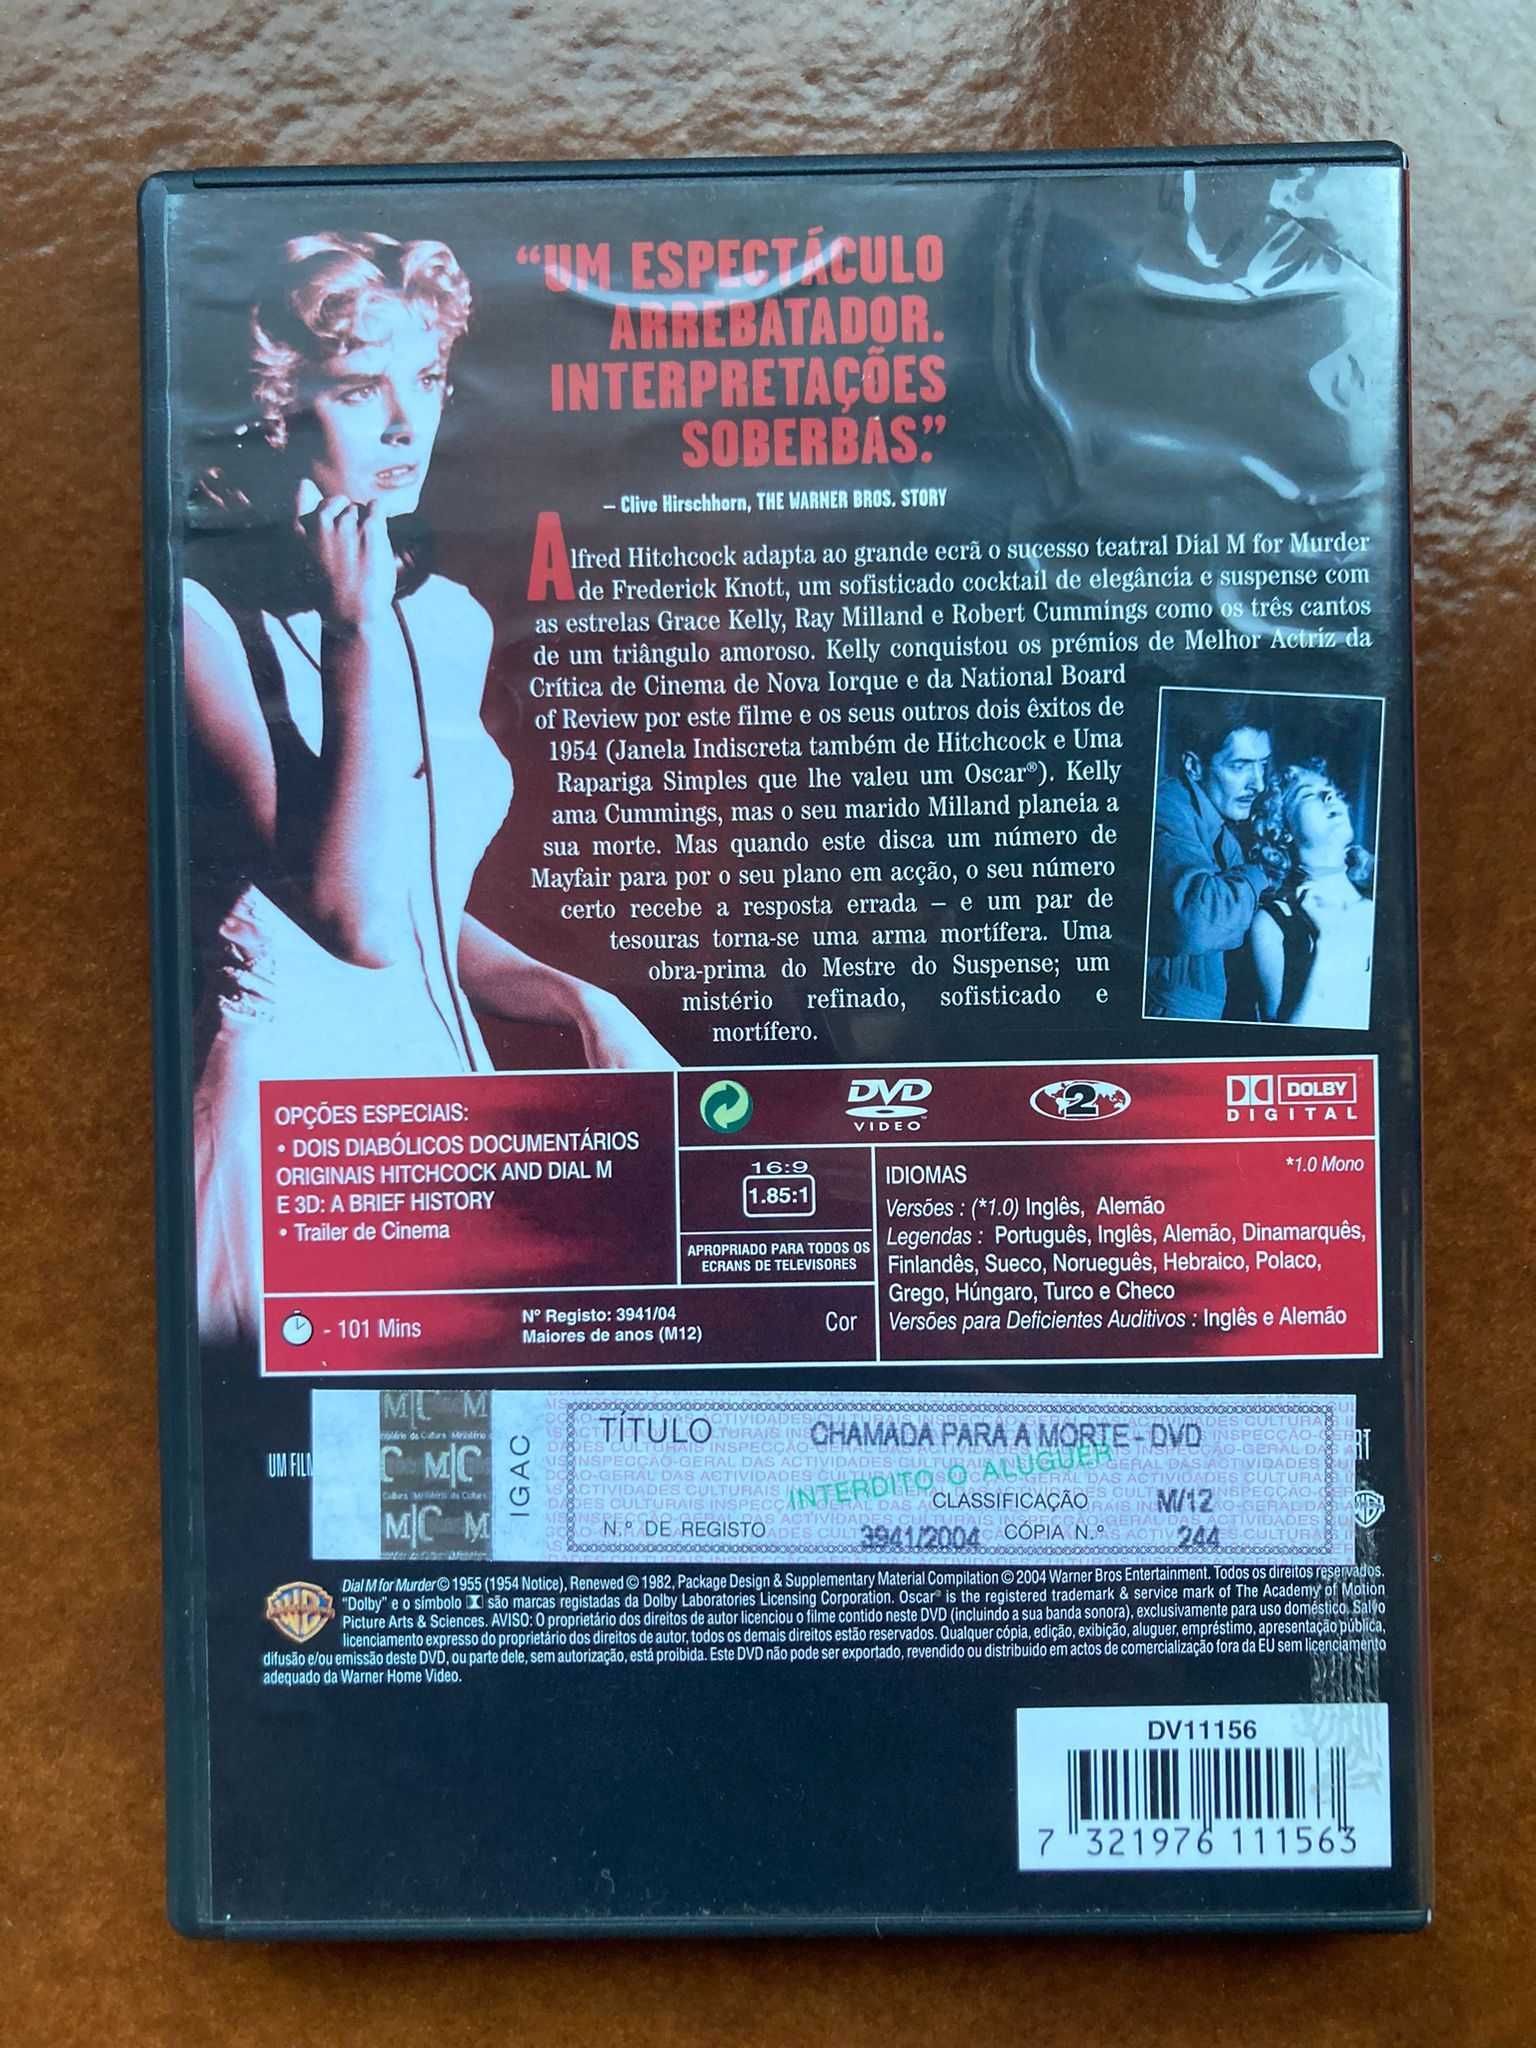 DVD Hitchcock "CHAMADA PARA A MORTE" com Grace Kelly